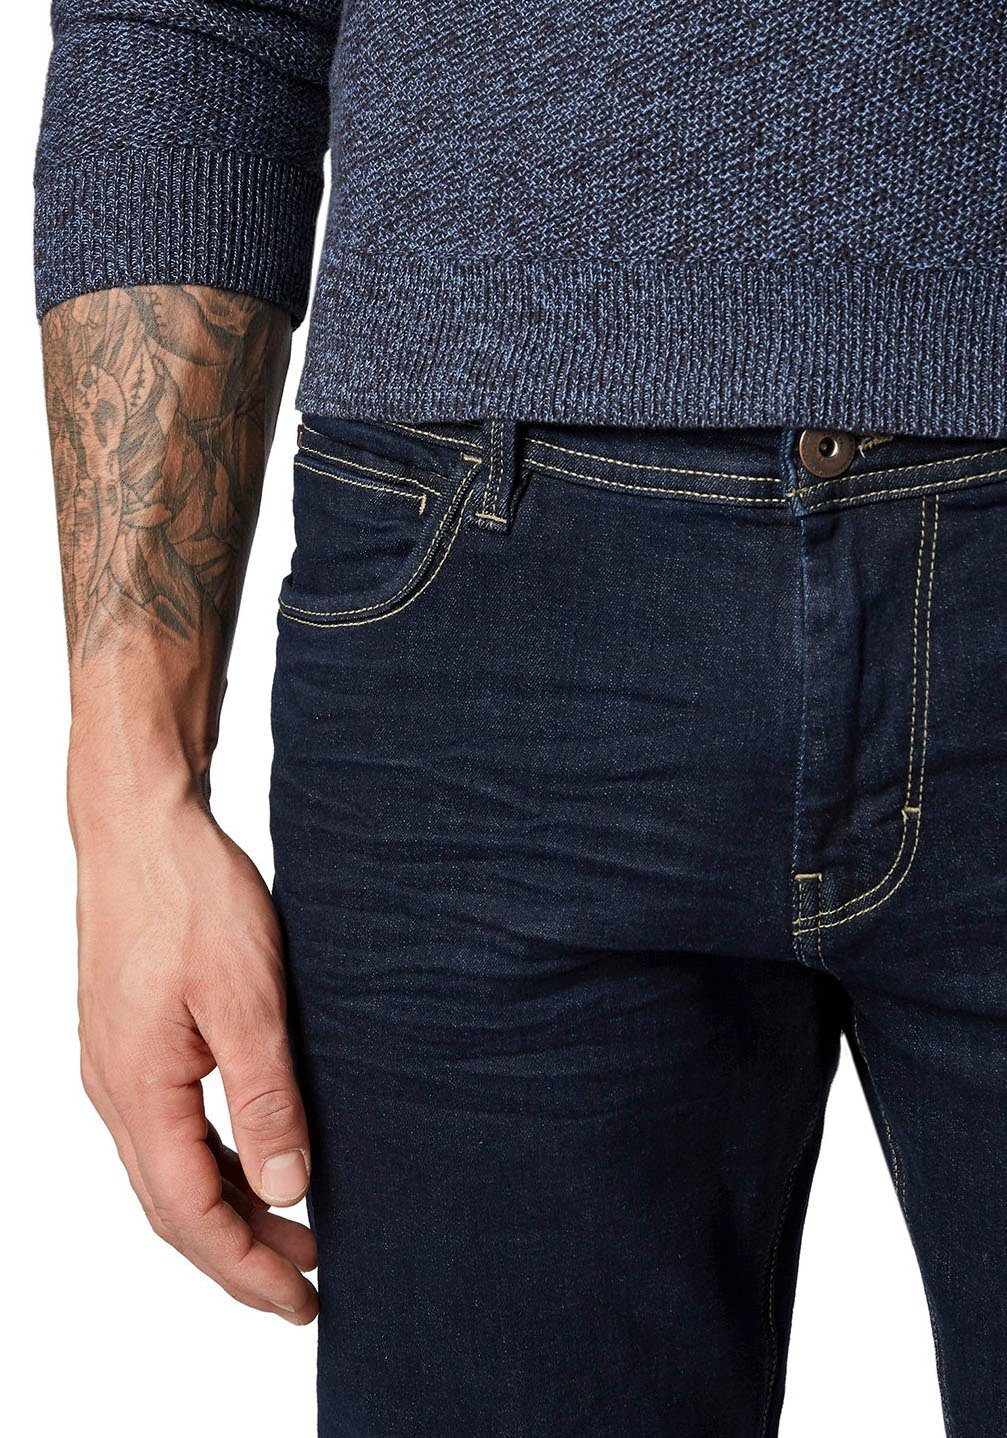 mit Blue Josh Reißverschluss TAILOR 5-Pocket-Jeans Clean TOM Rinsed